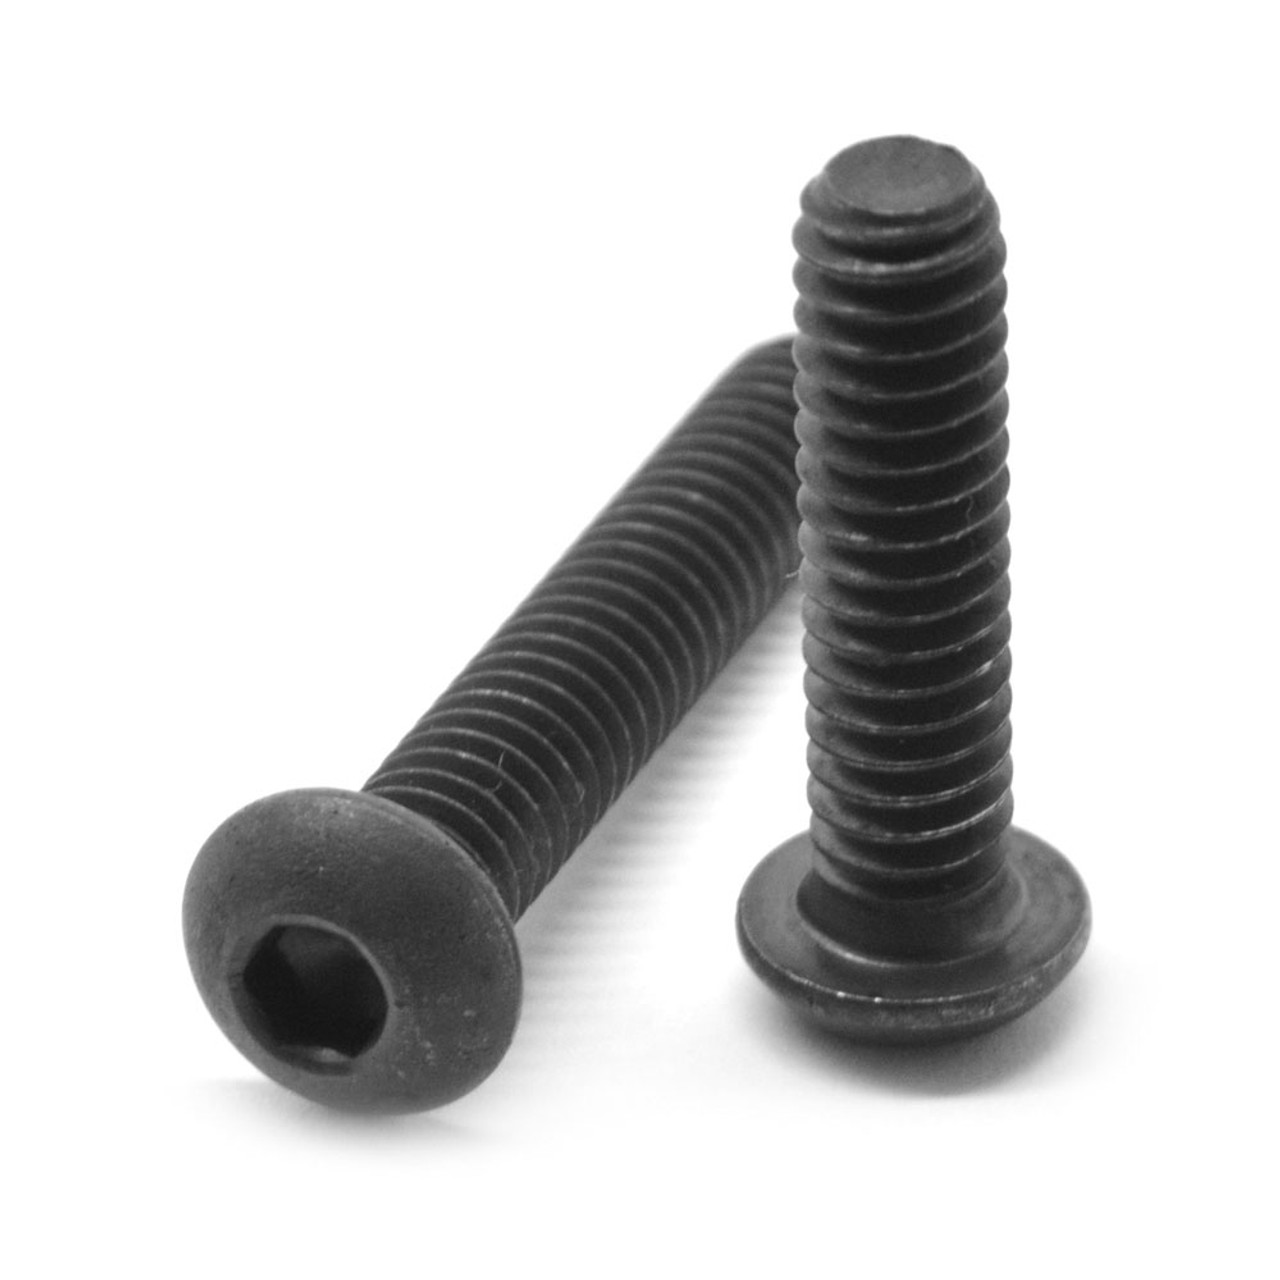 5/8"-11 x 1 1/4" (FT) Coarse Thread Socket Button Head Cap Screw Alloy Steel Black Oxide